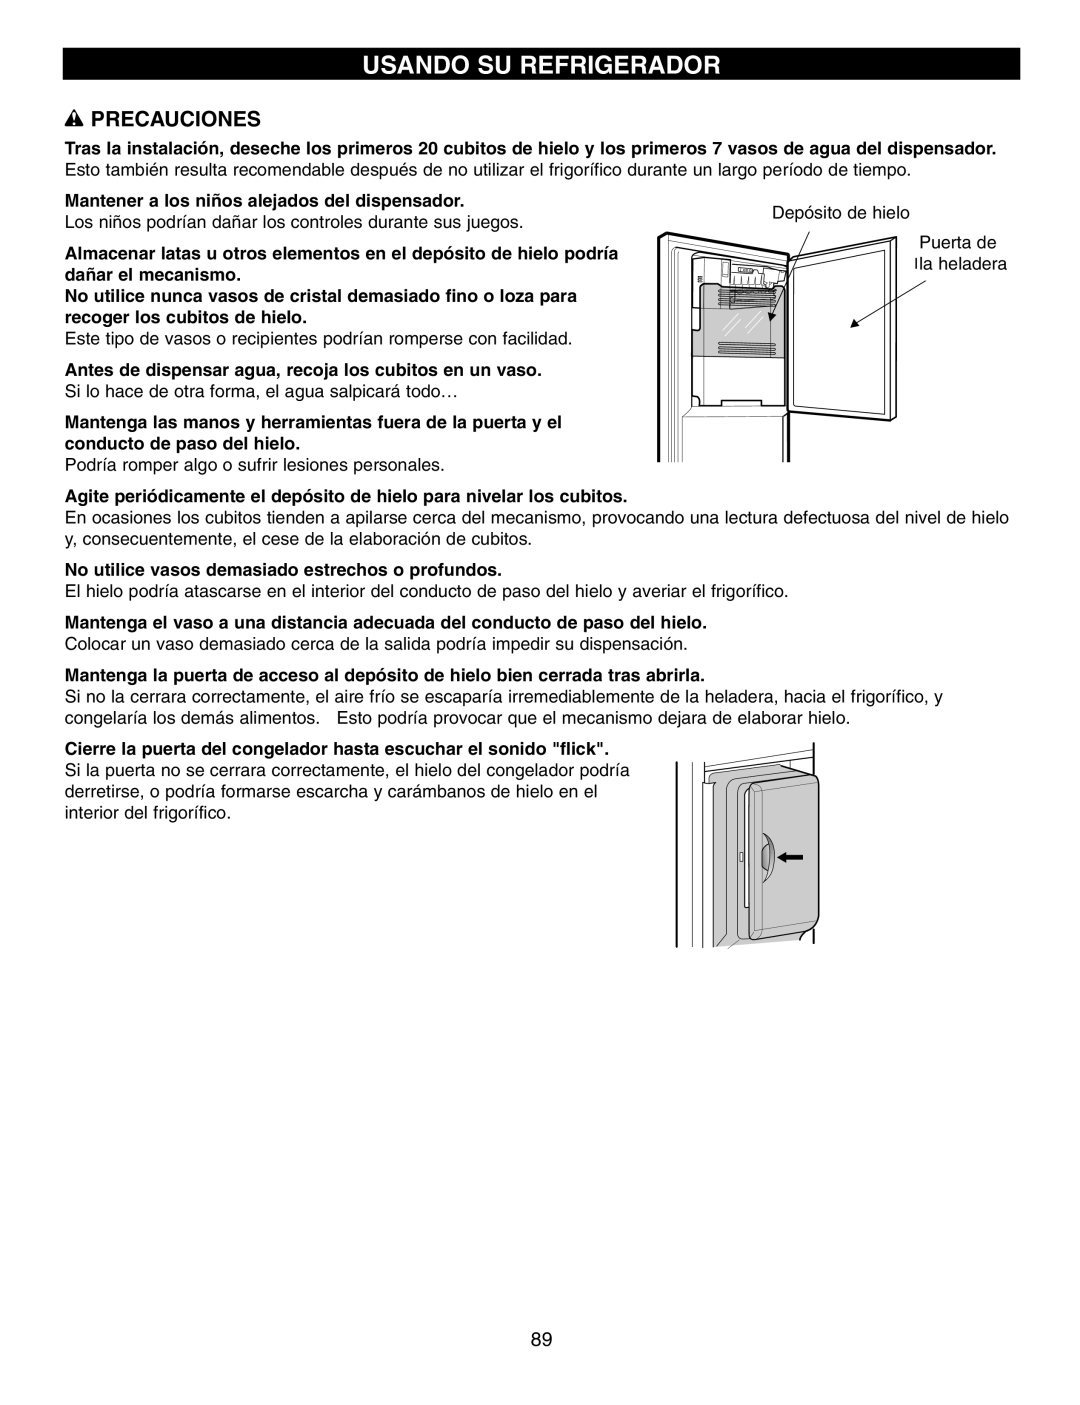 LG Electronics LFX21970, LFX25960 Usando Su Refrigerador, w PRECAUCIONES, Mantener a los niños alejados del dispensador 